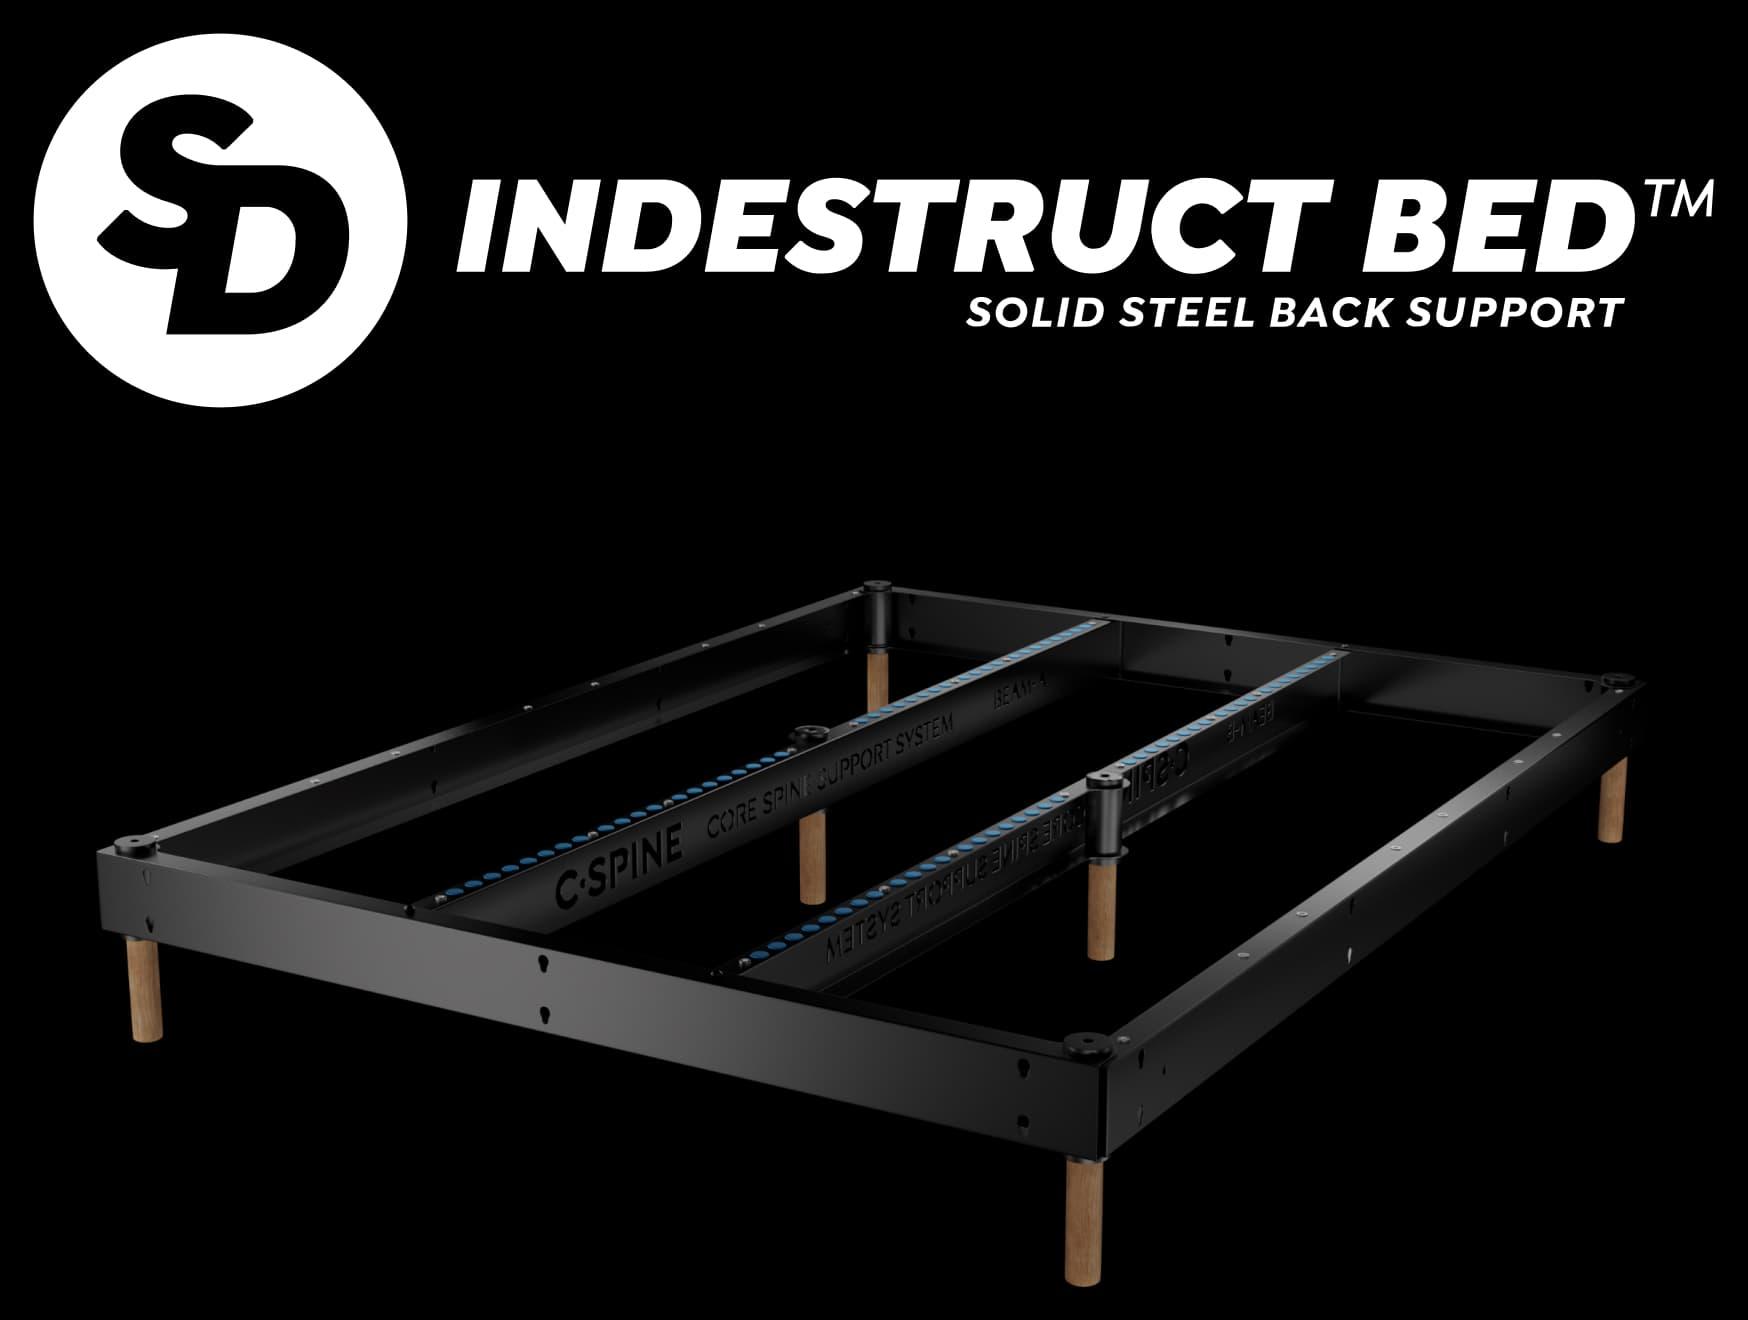 SD Indestruct Bed: C-Spine Frame